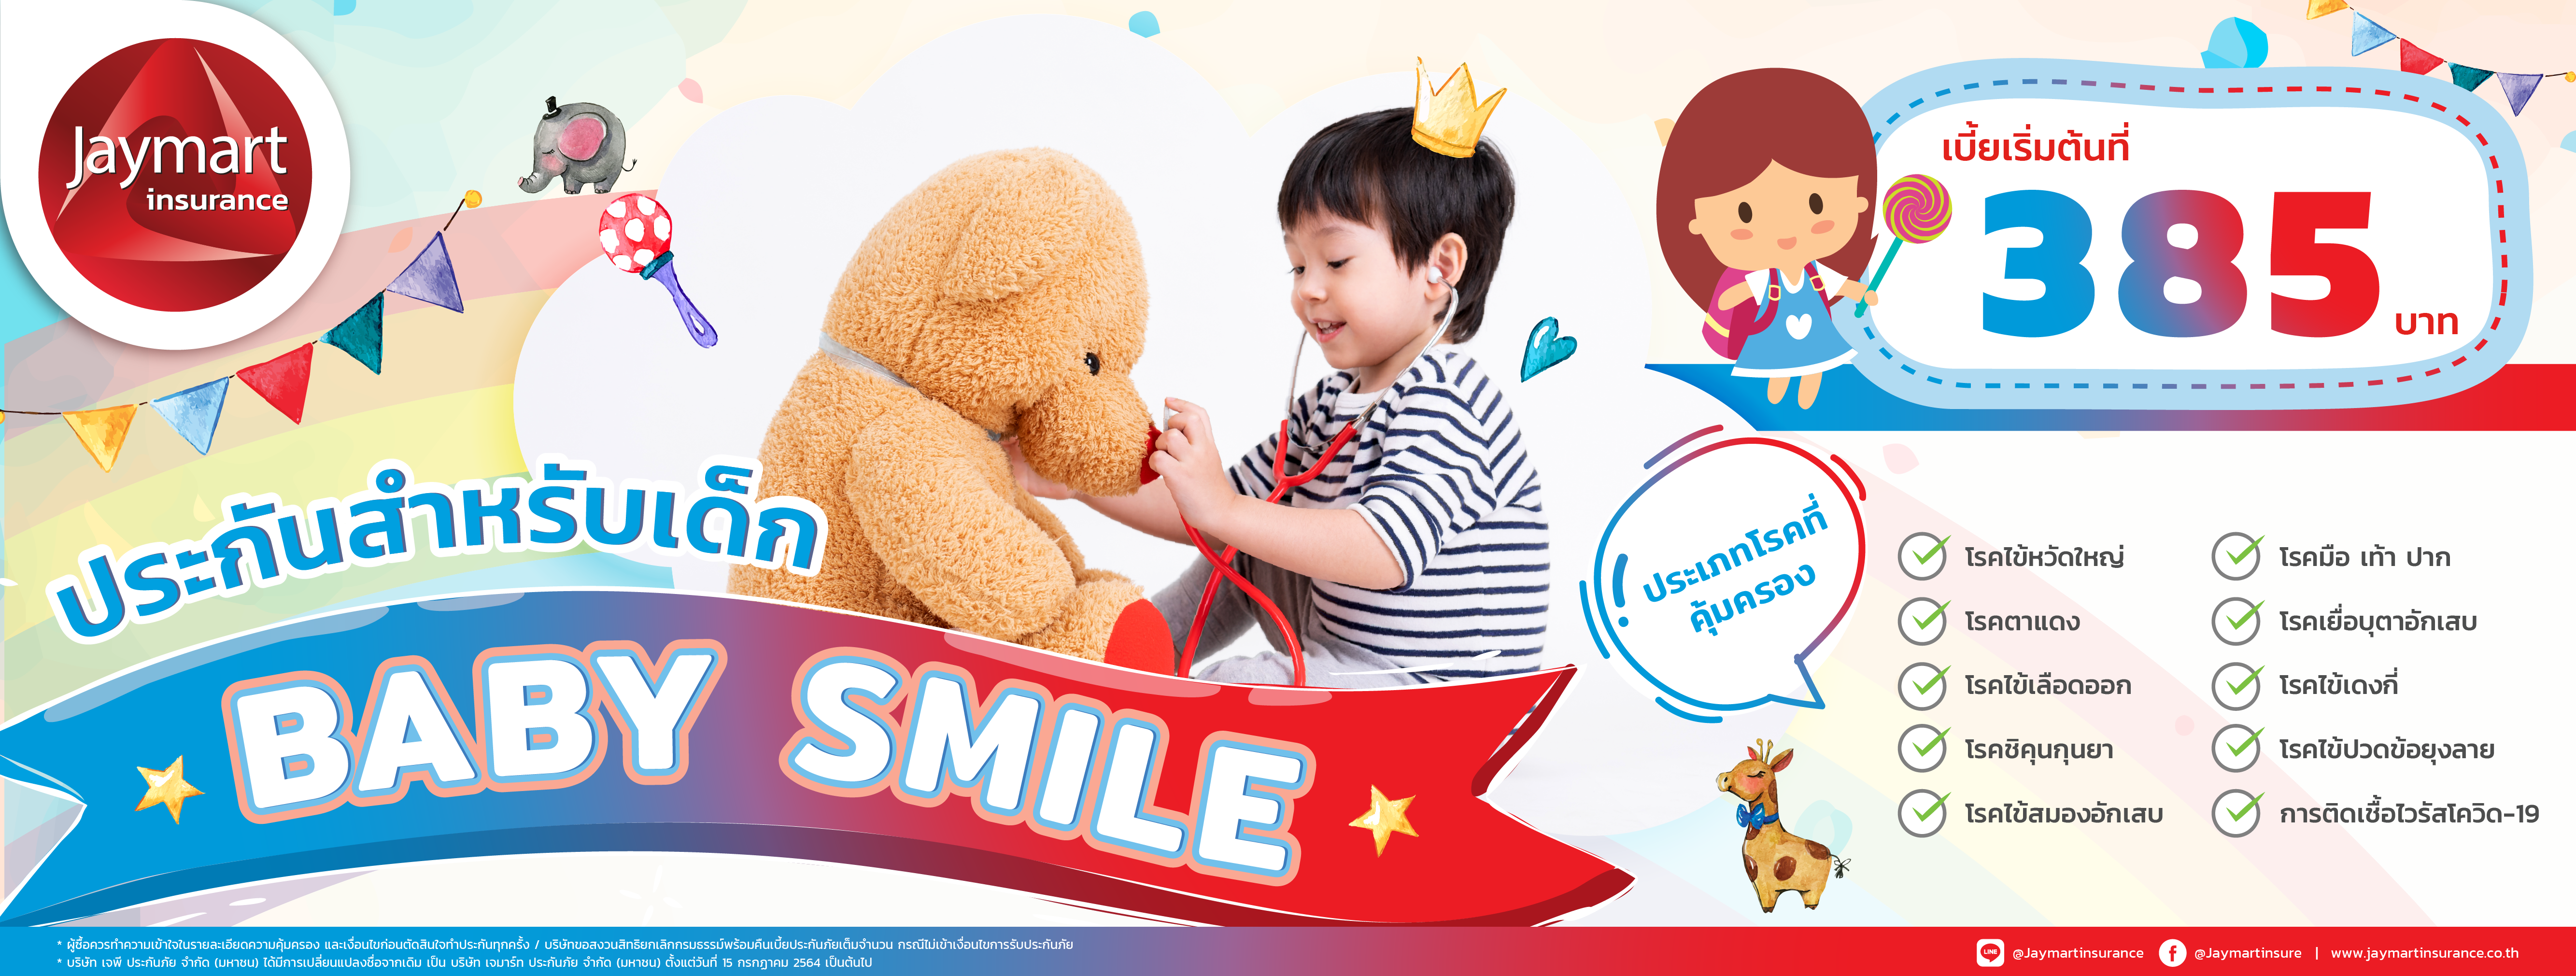 ประกันภัยสุขภาพสำหรับเด็ก Baby Smile - ปิดการขาย วันที่ 10 กุมภาพันธ์ 2565 -